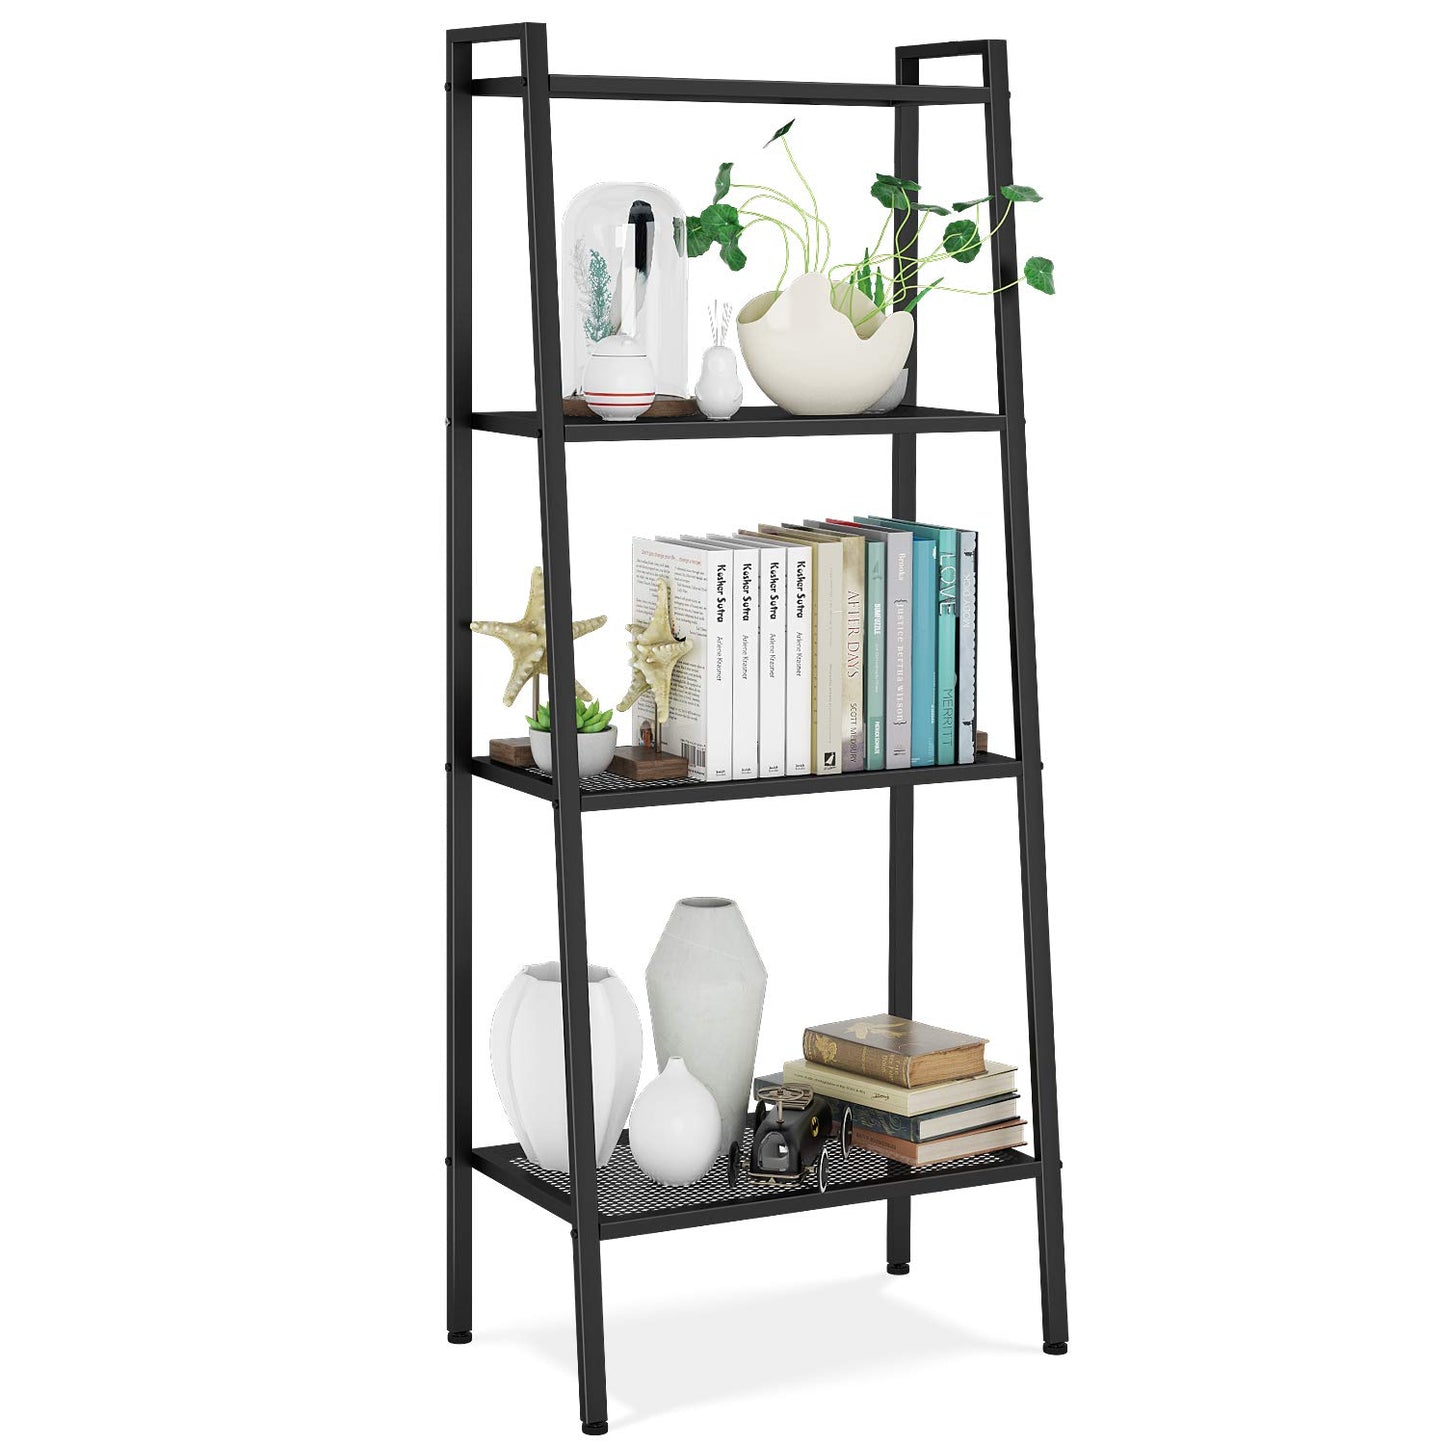 Grandiose 4-Tier Ladder Shelf Bookcase